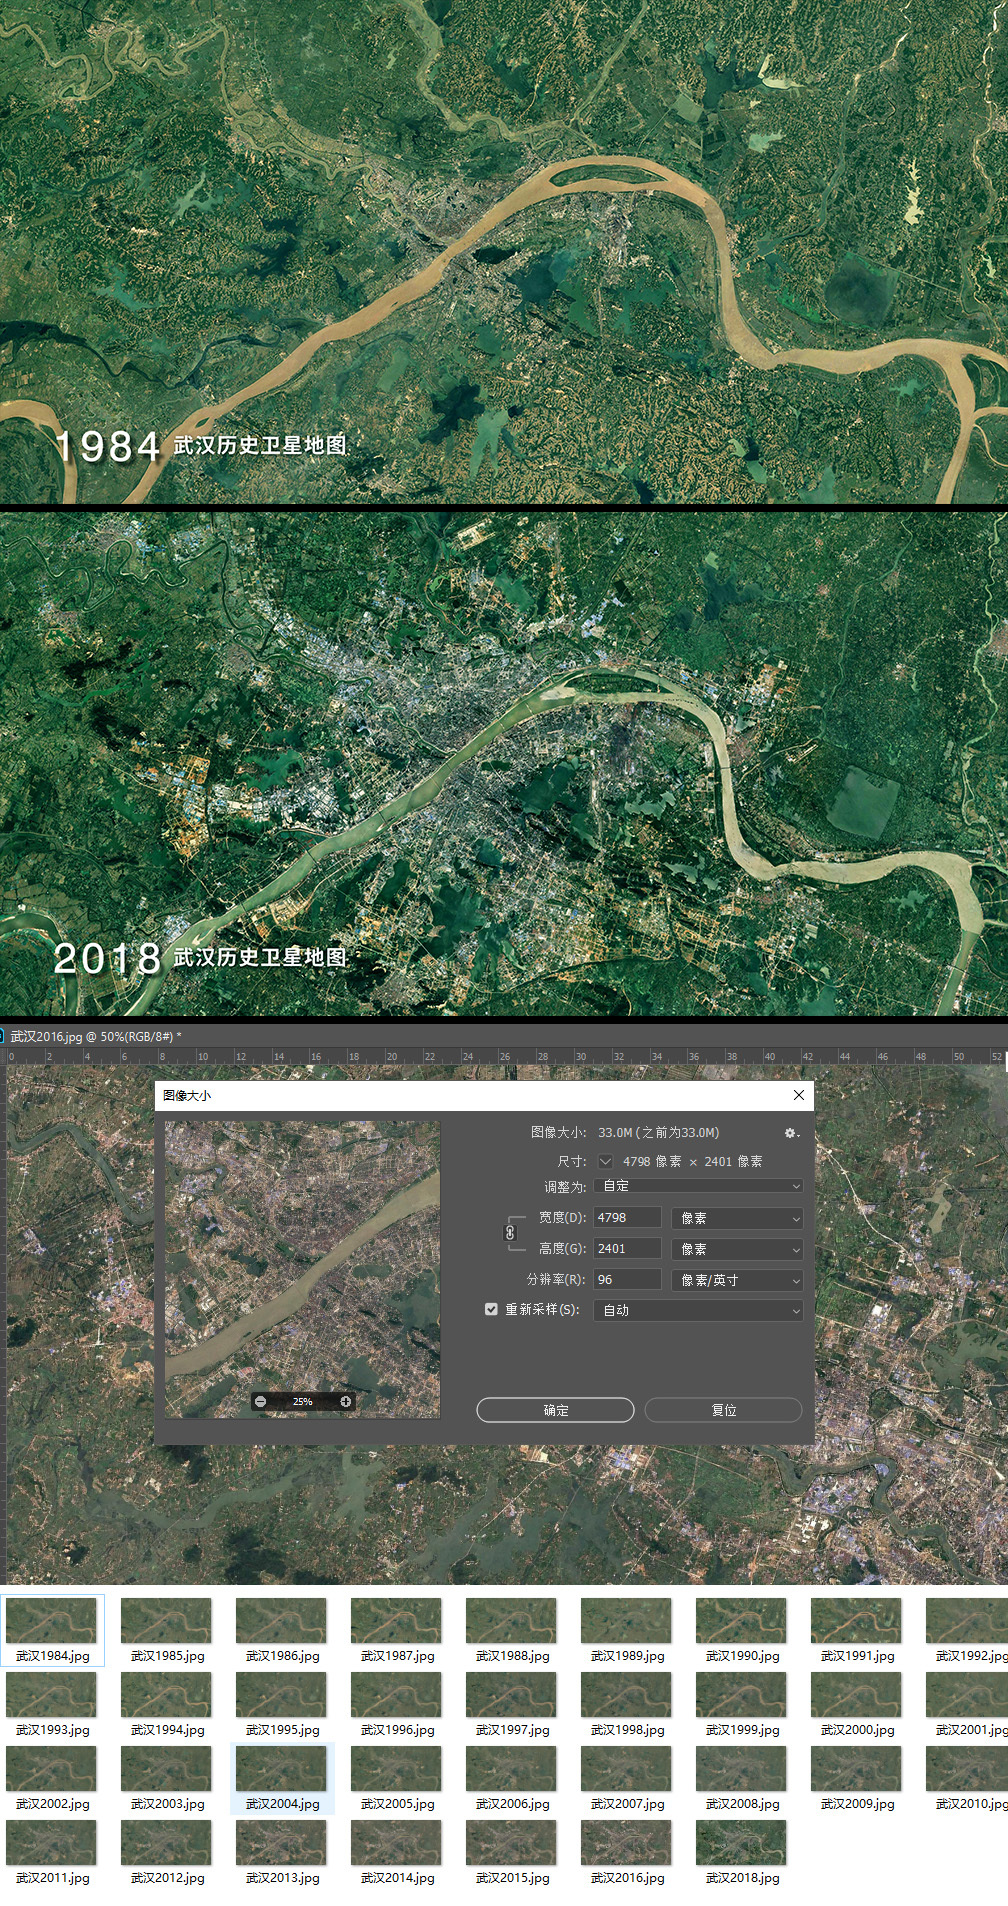 武汉40年变迁历史卫星图 4K